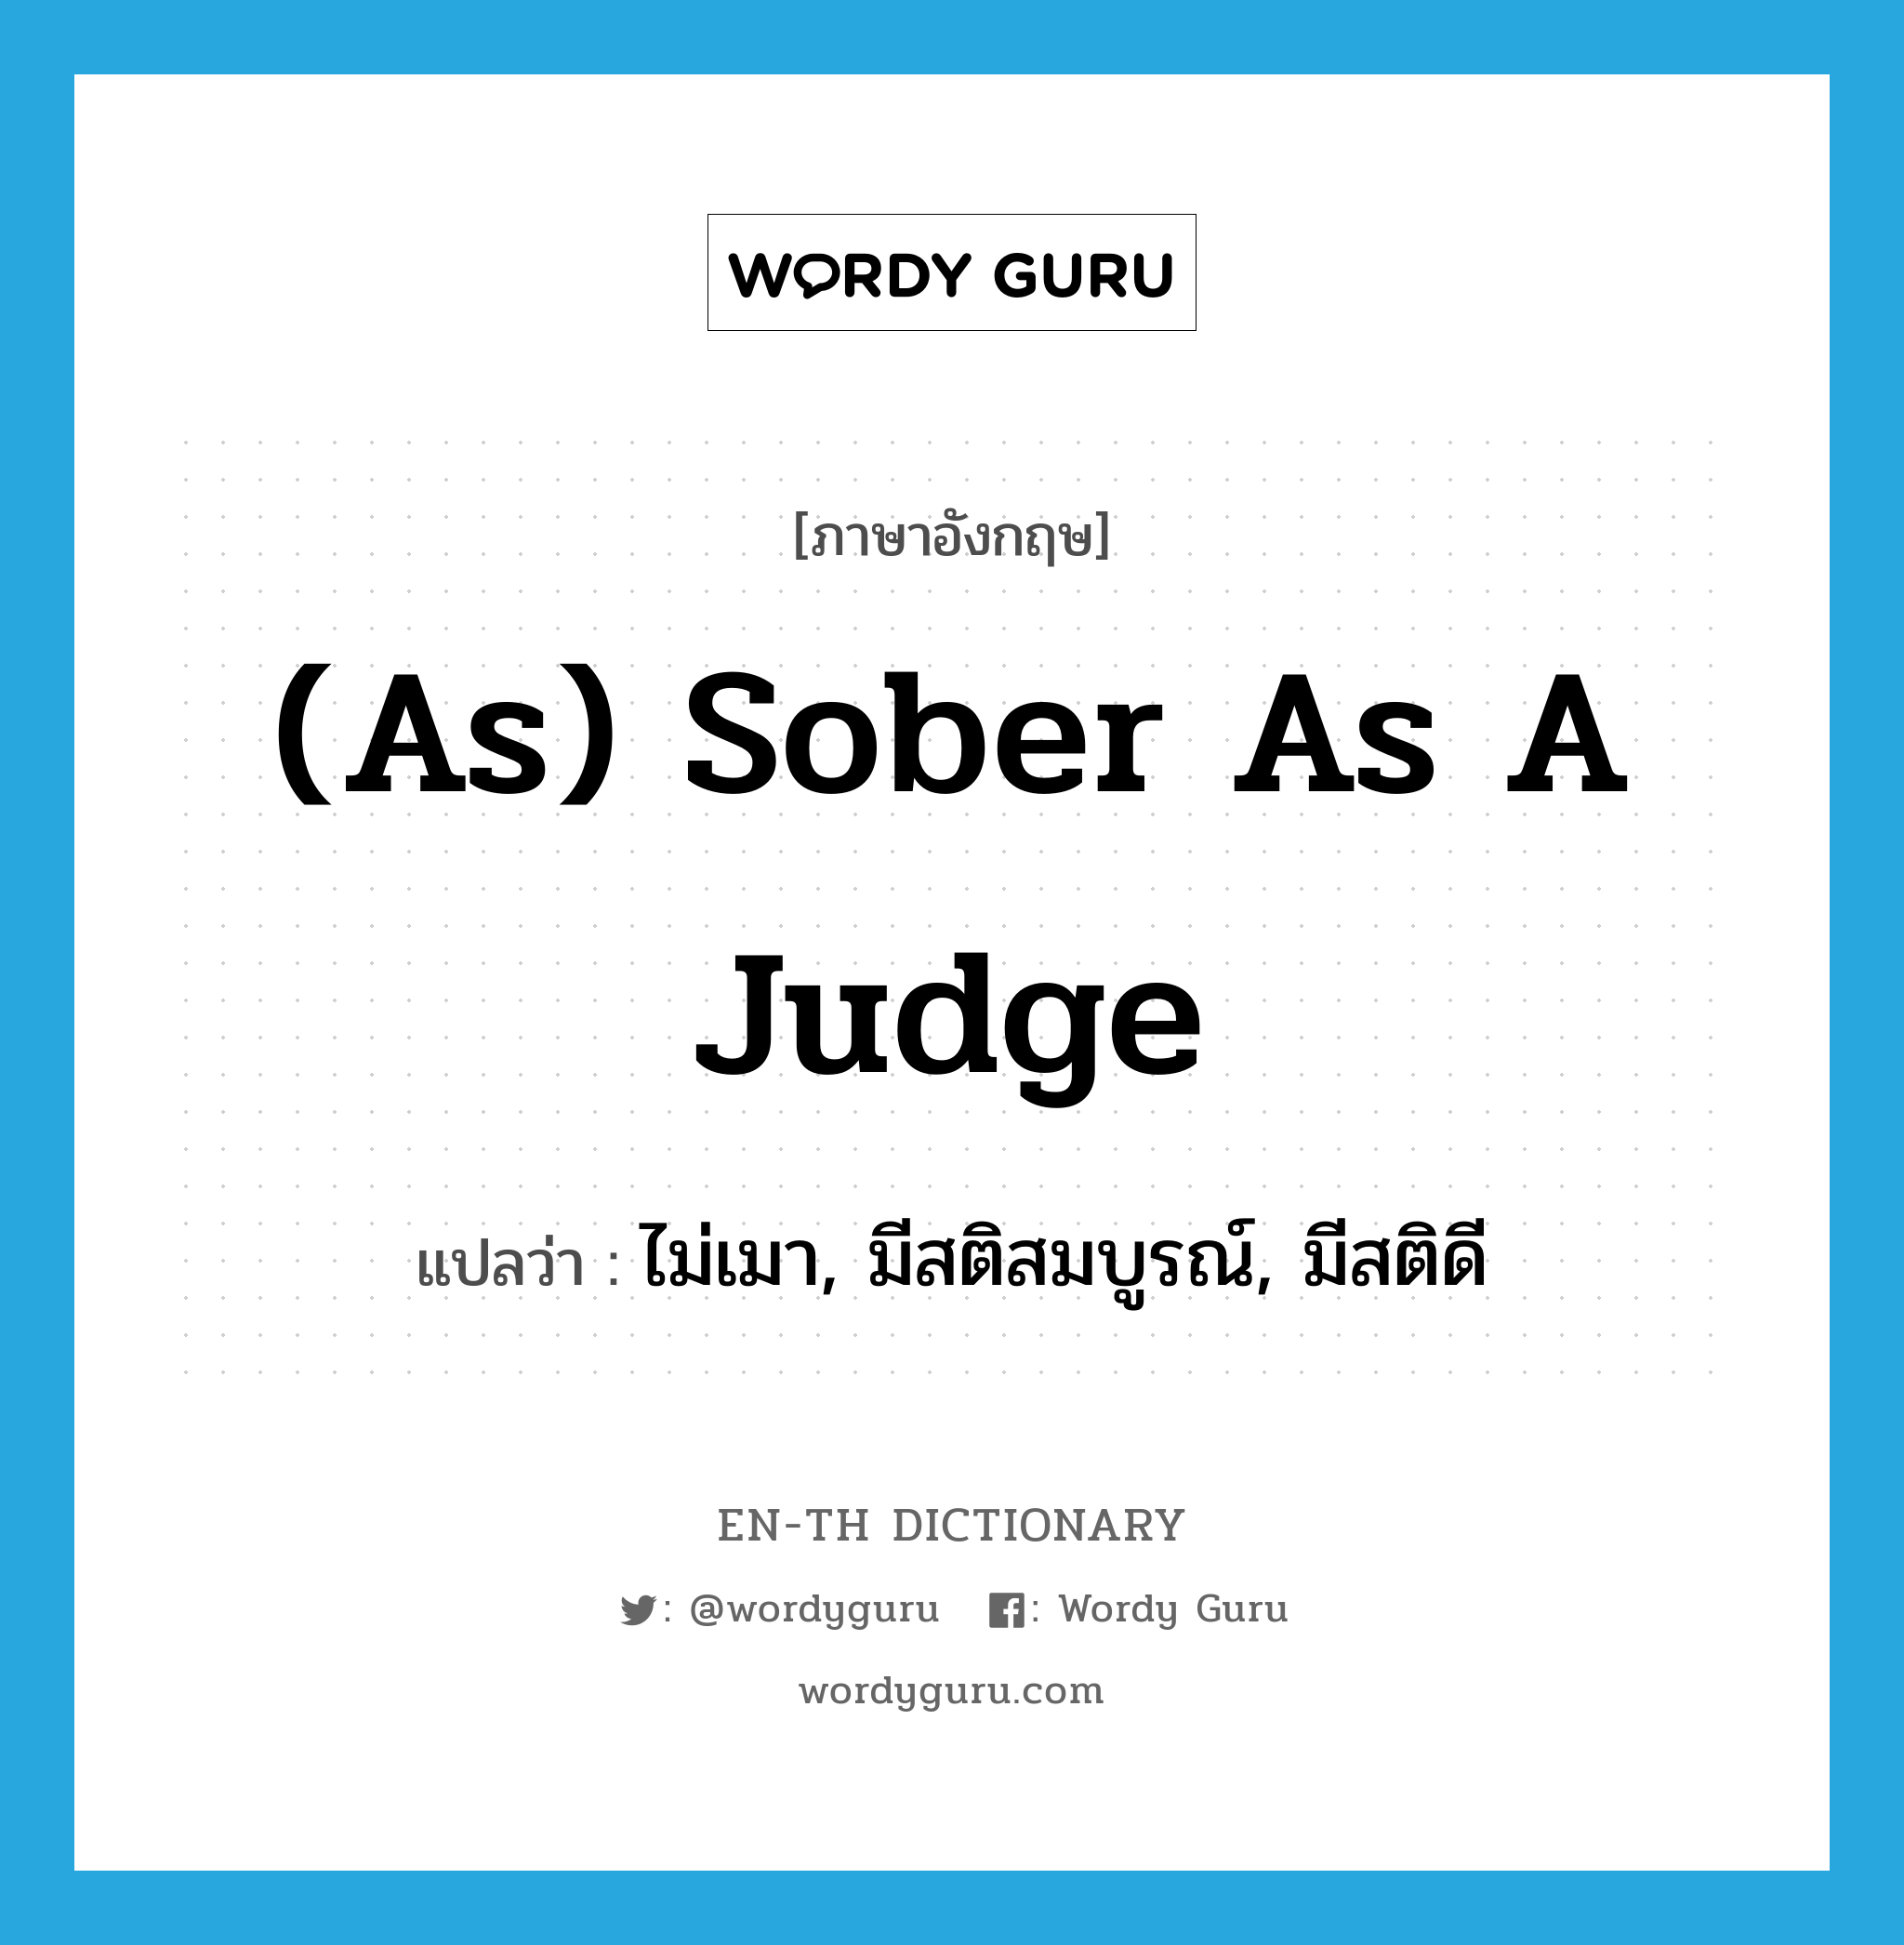 ไม่เมา, มีสติสมบูรณ์, มีสติดี ภาษาอังกฤษ?, คำศัพท์ภาษาอังกฤษ ไม่เมา, มีสติสมบูรณ์, มีสติดี แปลว่า (as) sober as a judge ประเภท IDM หมวด IDM